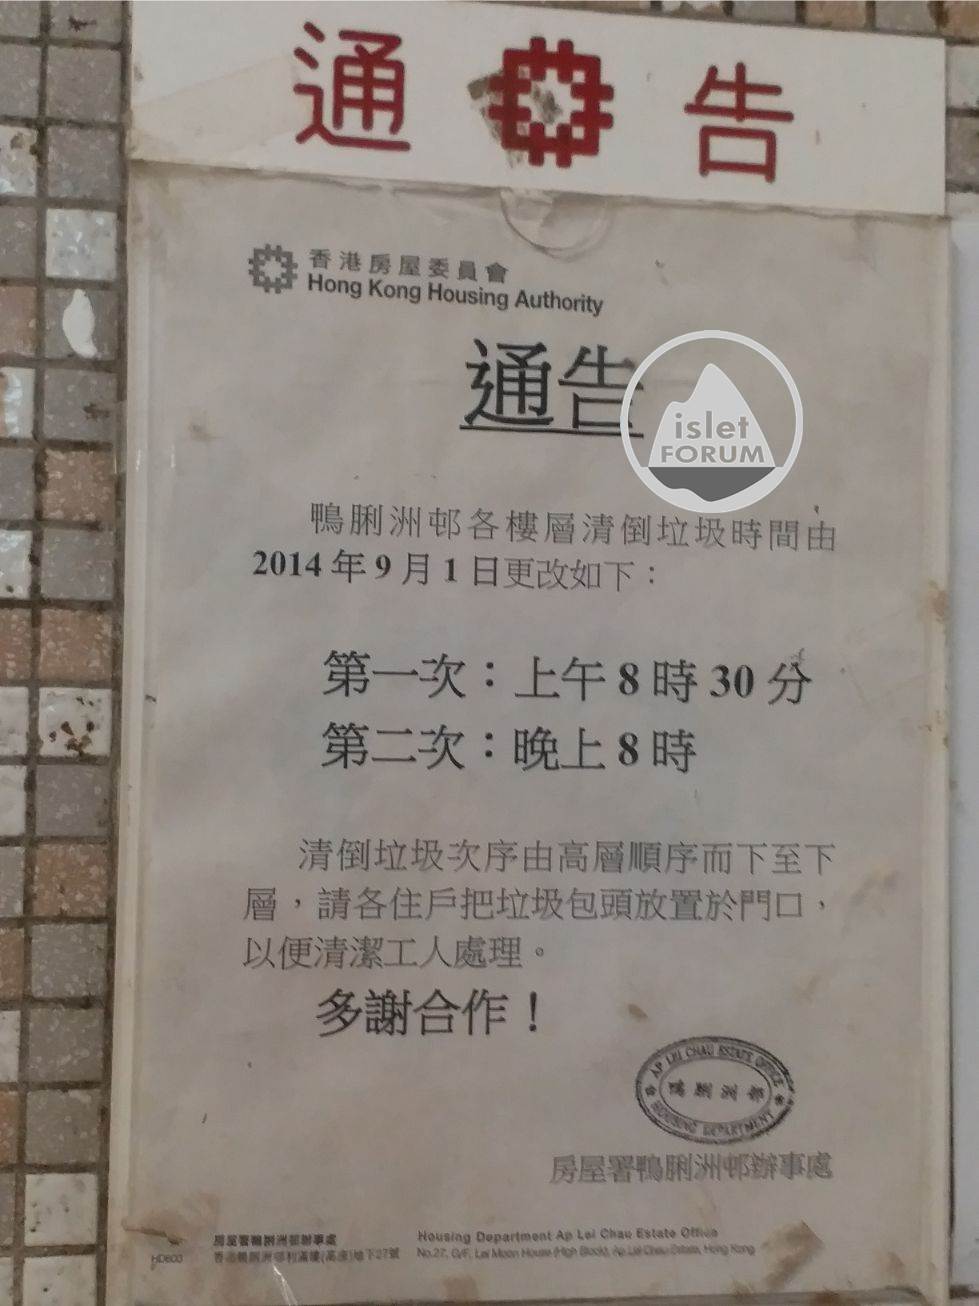 香港房屋委員會 Hong Kong Housing Authority (10).jpg